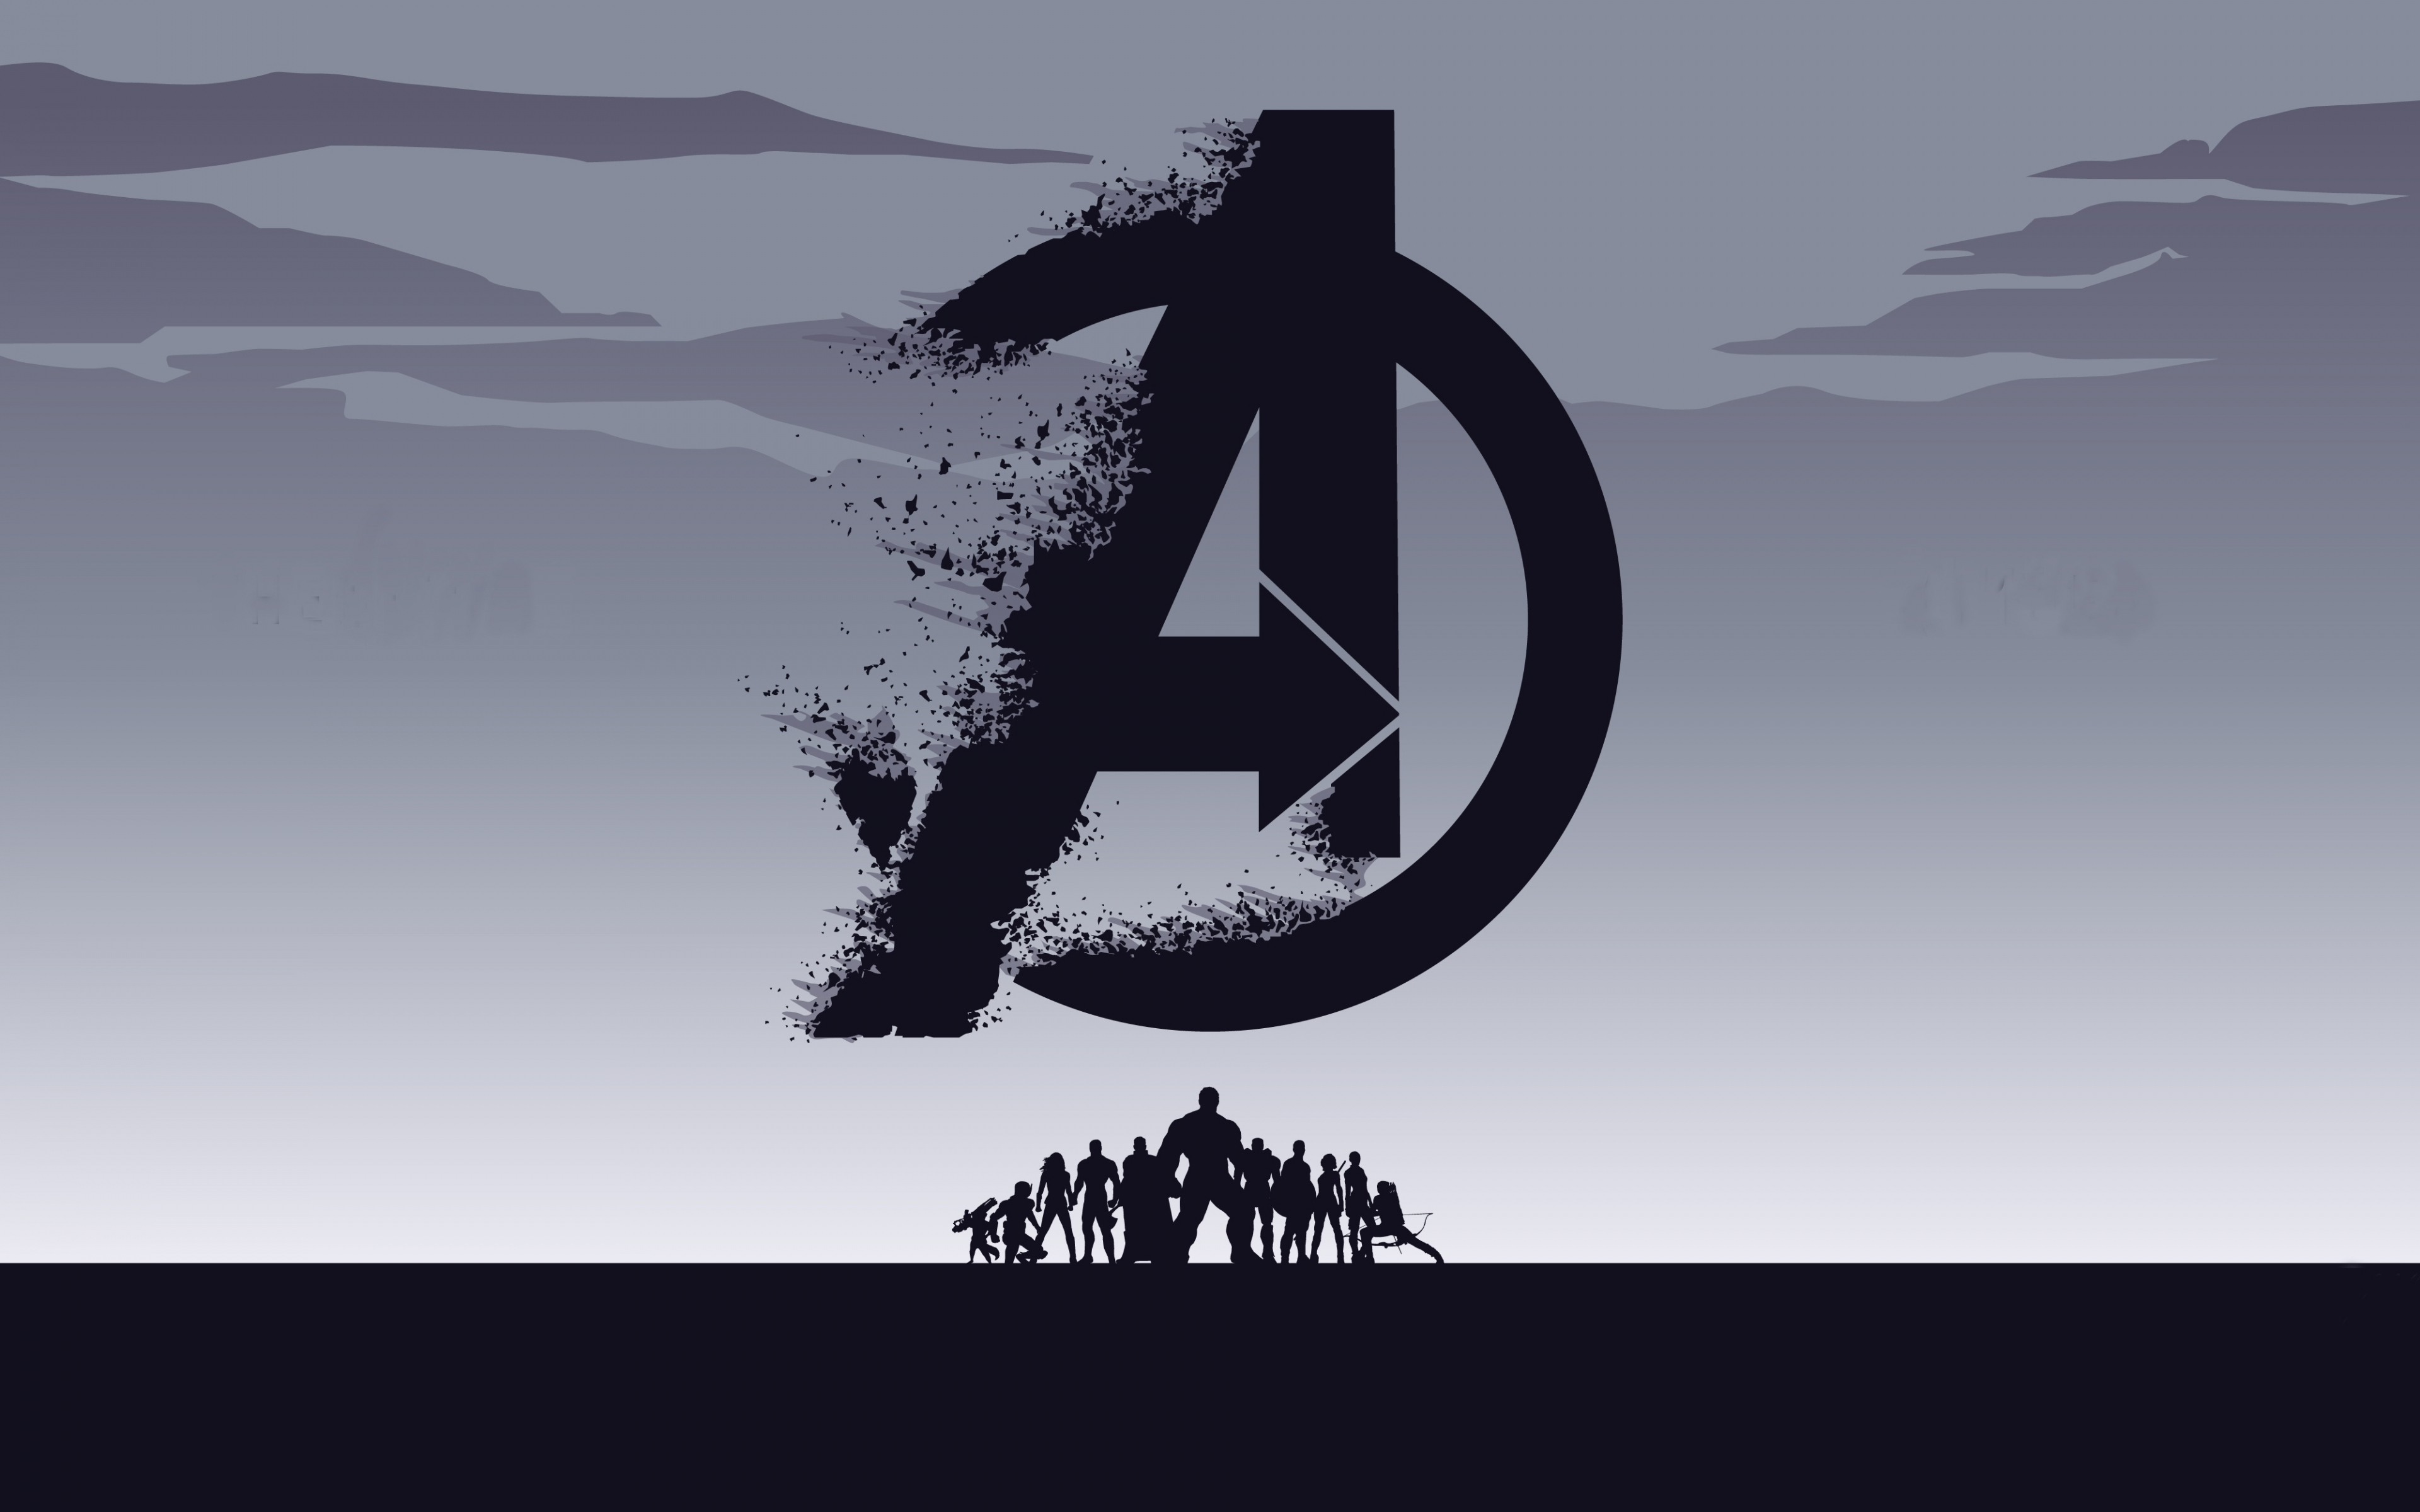 4K Avengers Endgame Wallpapers